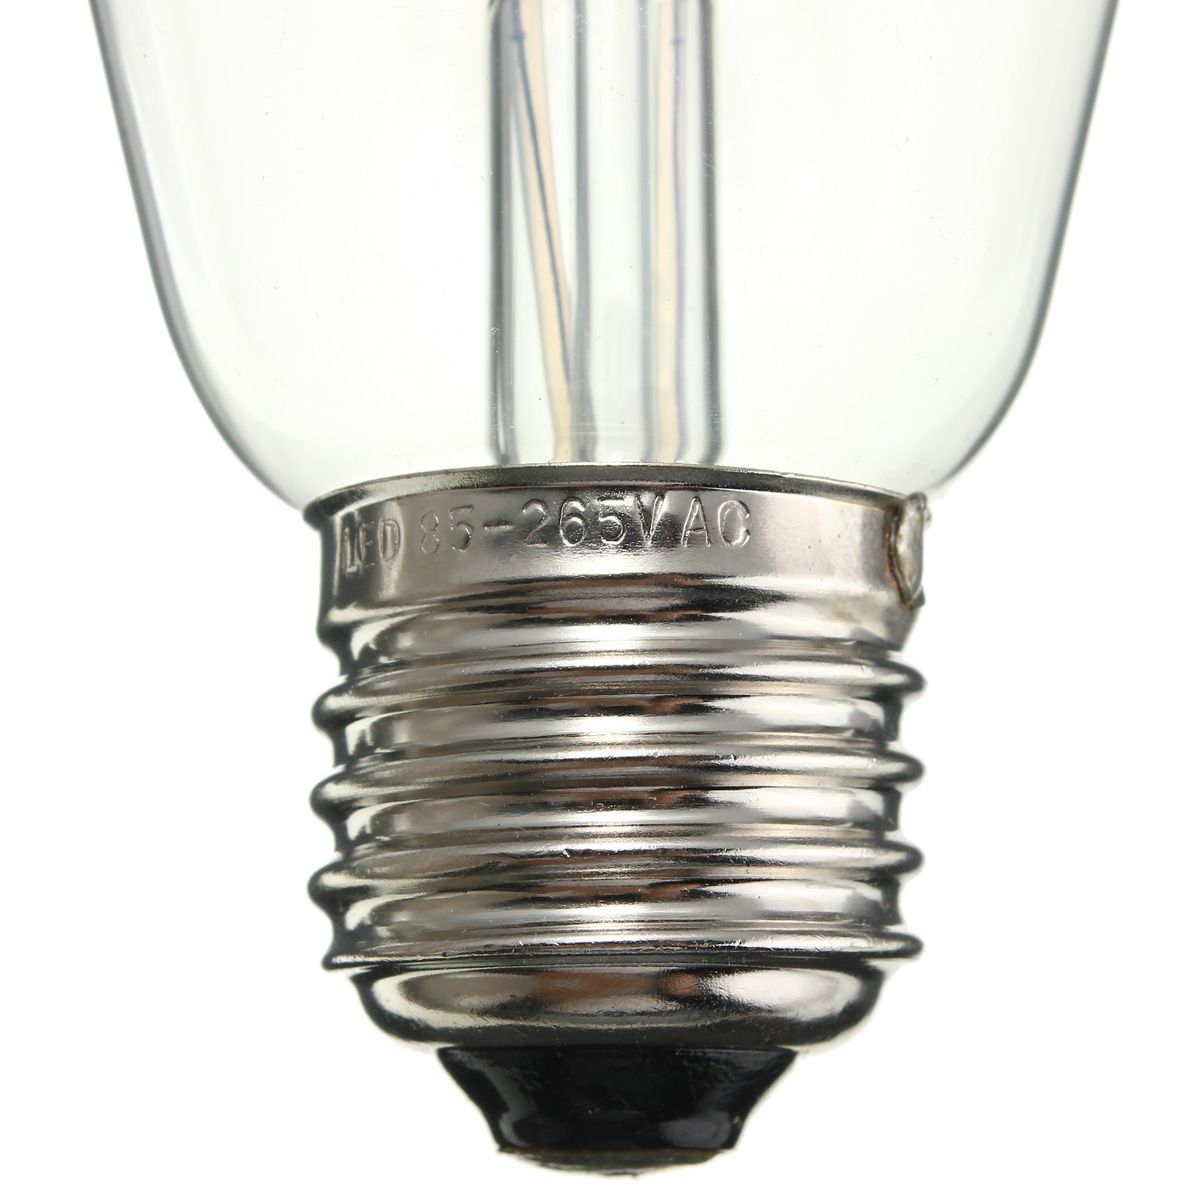 Kingso-E27-ST64-8W-Warm-White-Vintage-Edsion-Non-dimmable-LED-COB-Light-Bulb-AC85-265V-1518260